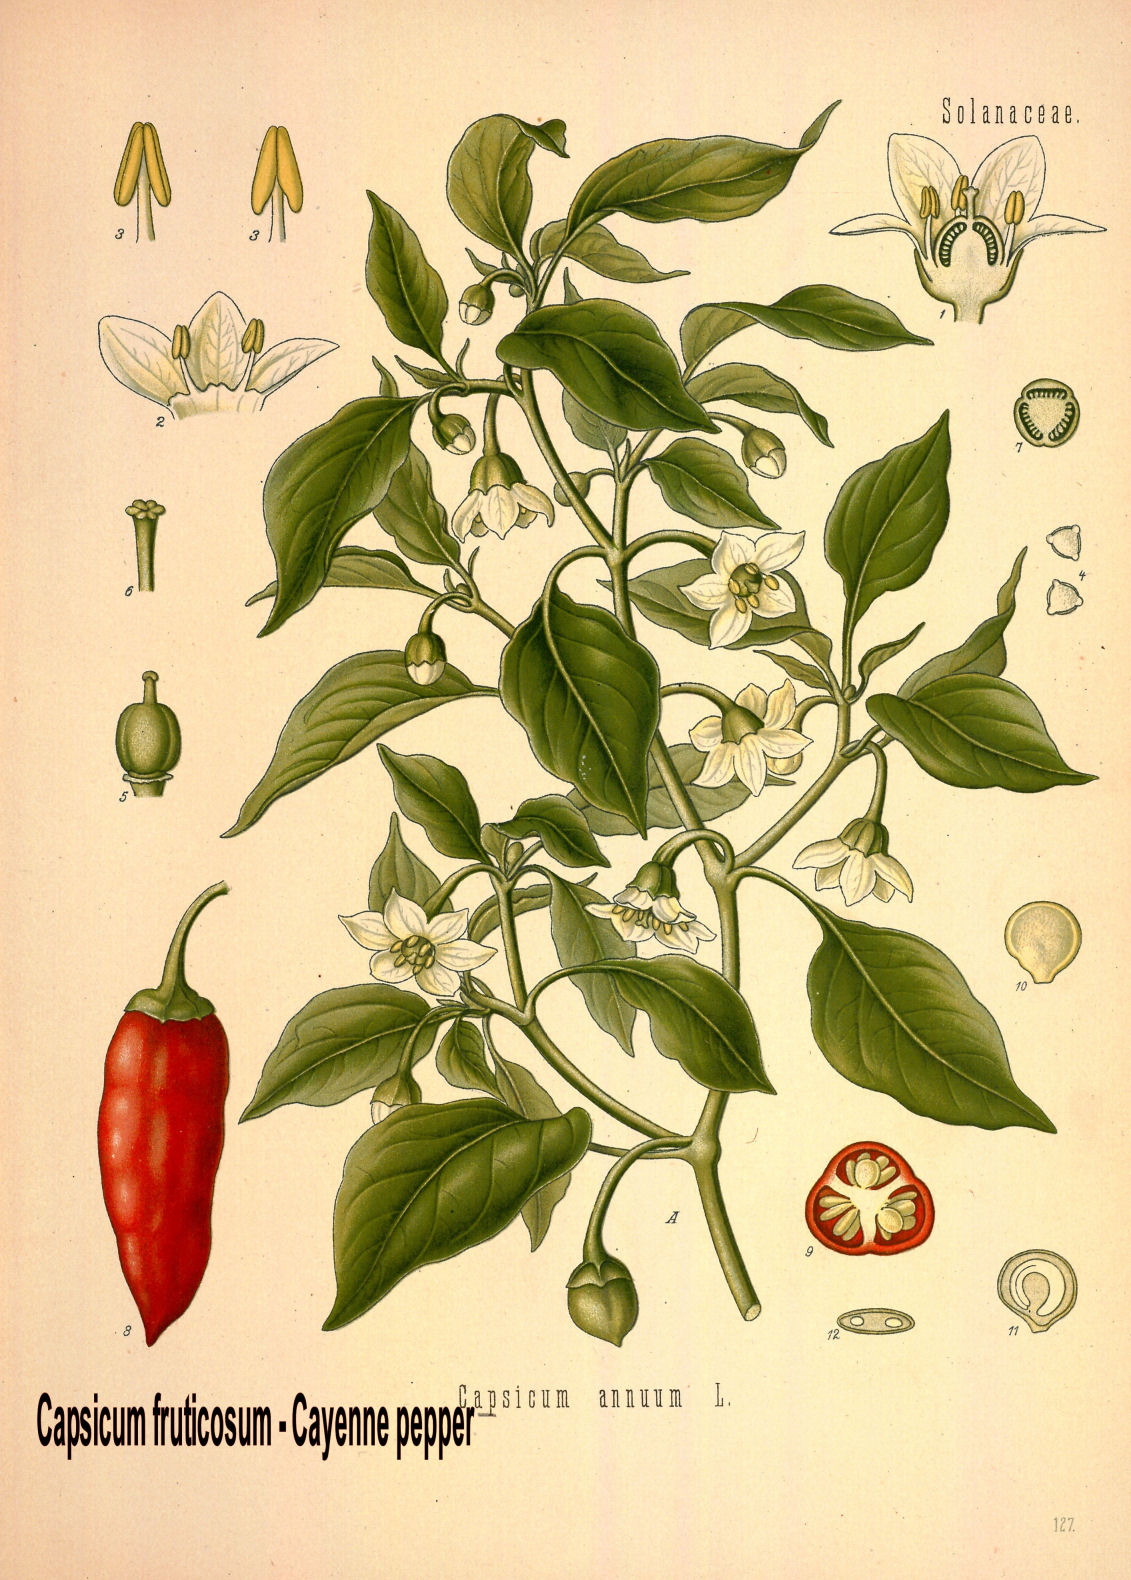 Capsicum frutescens-Cayenne pepper